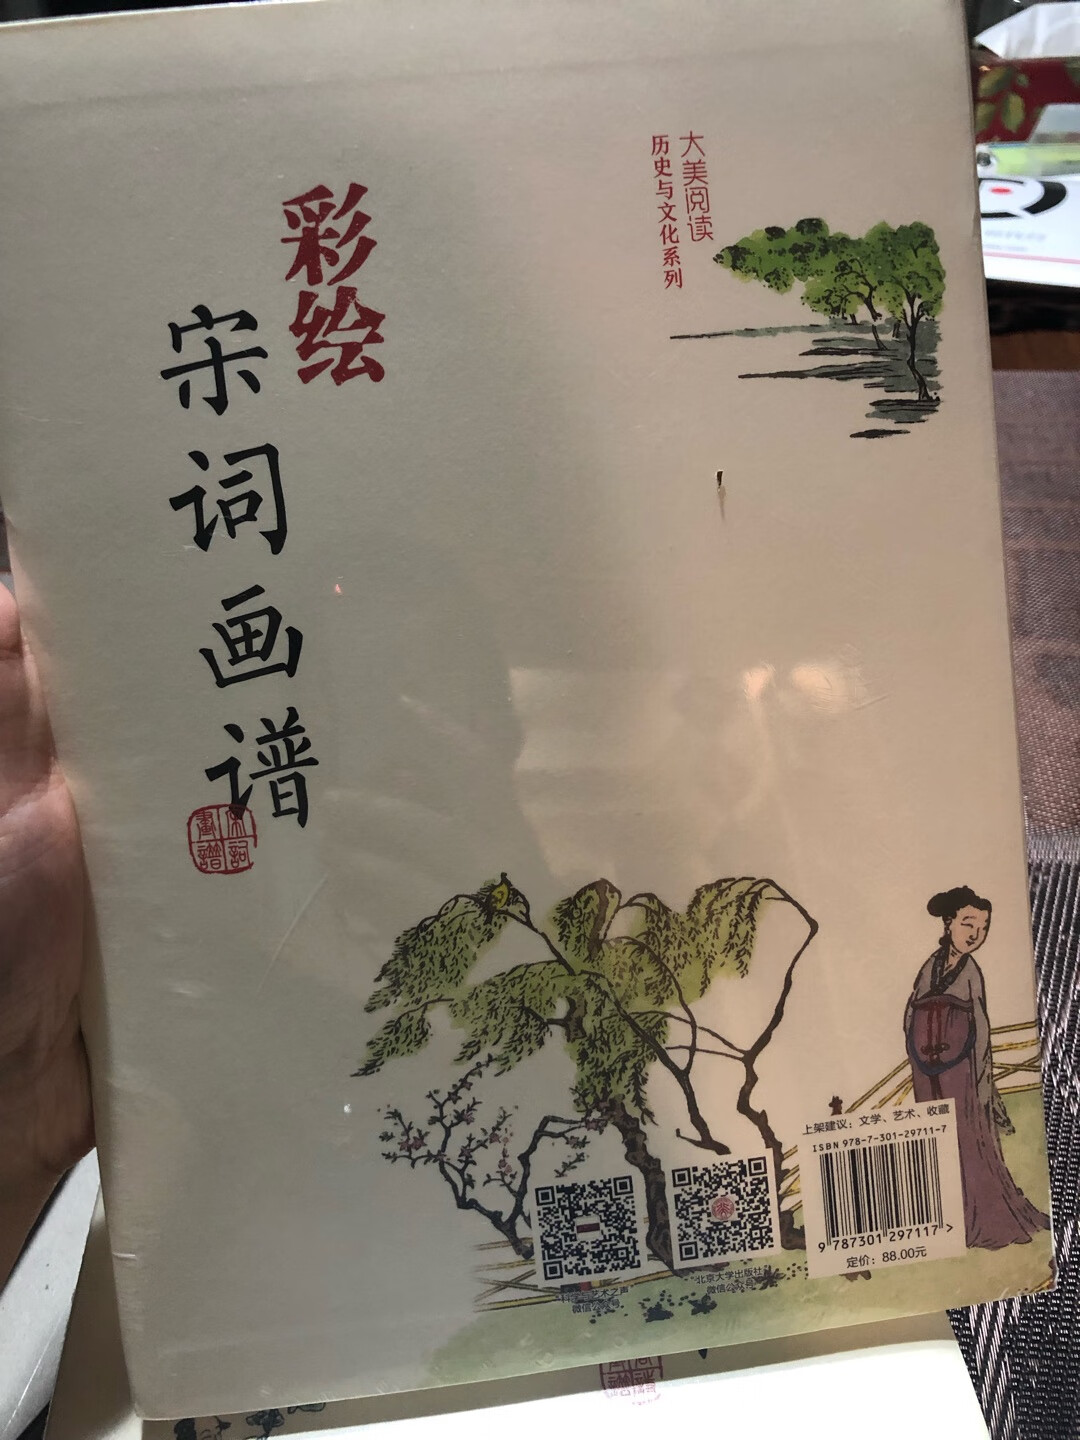 漂亮的字漂亮的画，我买的16K的，大一点看起来清楚，临摹起来方便，书法旁边是简体中文，但也是书法，下面是词意、词作者和书者介绍，画的下面是画意解读，一举多得